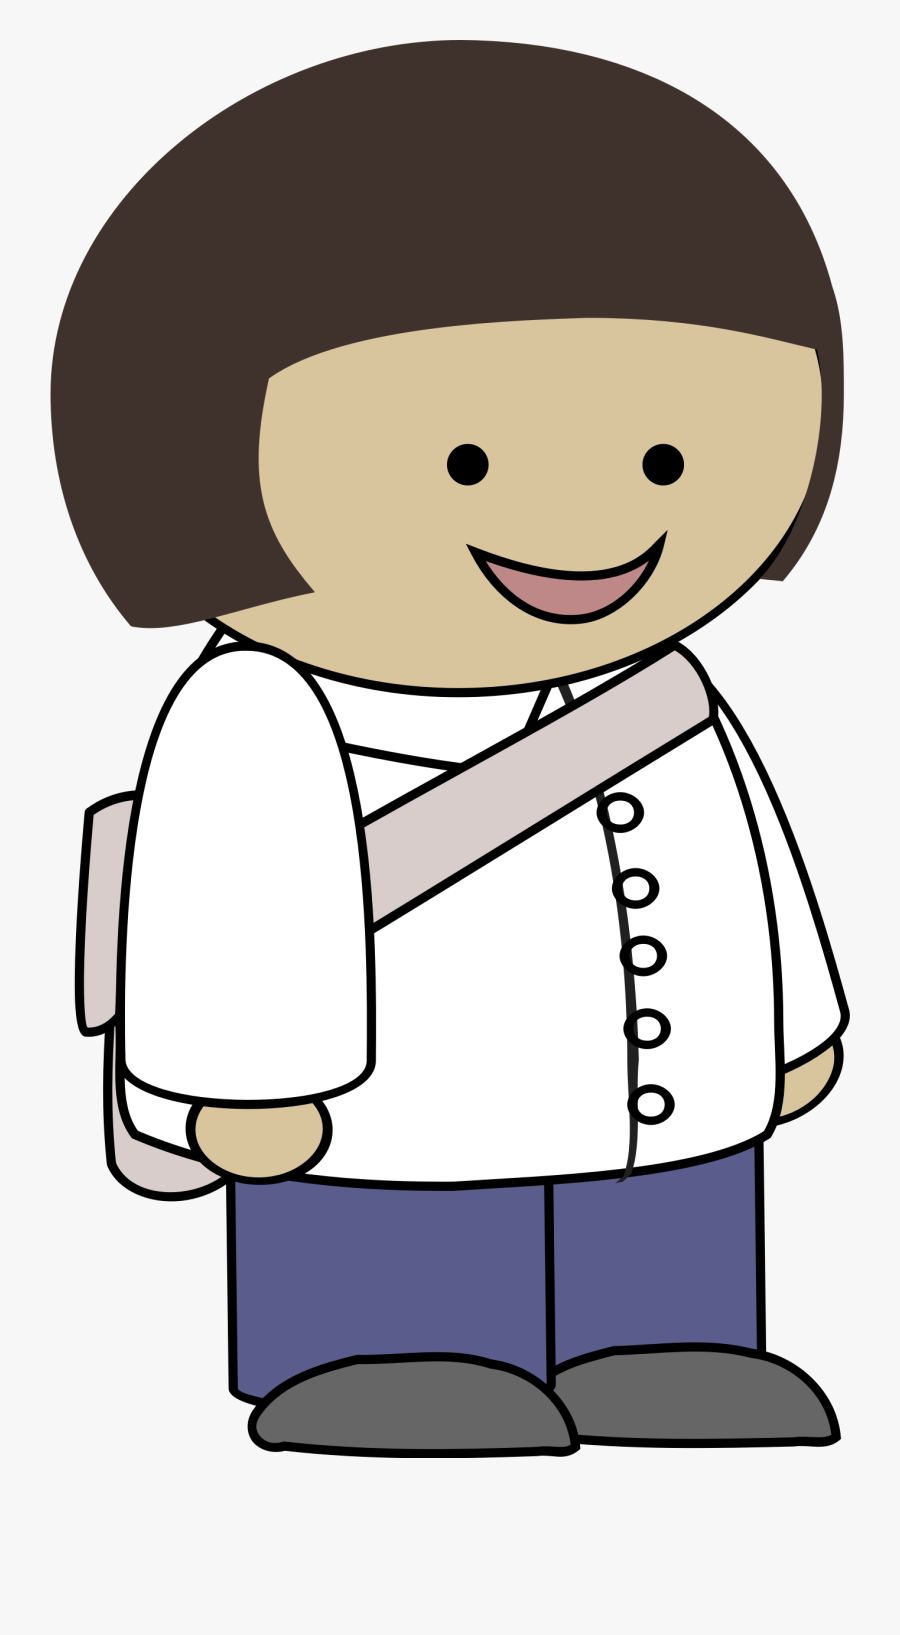 This Free Icons Png Design Of Smiling Girl - Personagens Para Historia Em Quadrinhos, Transparent Clipart